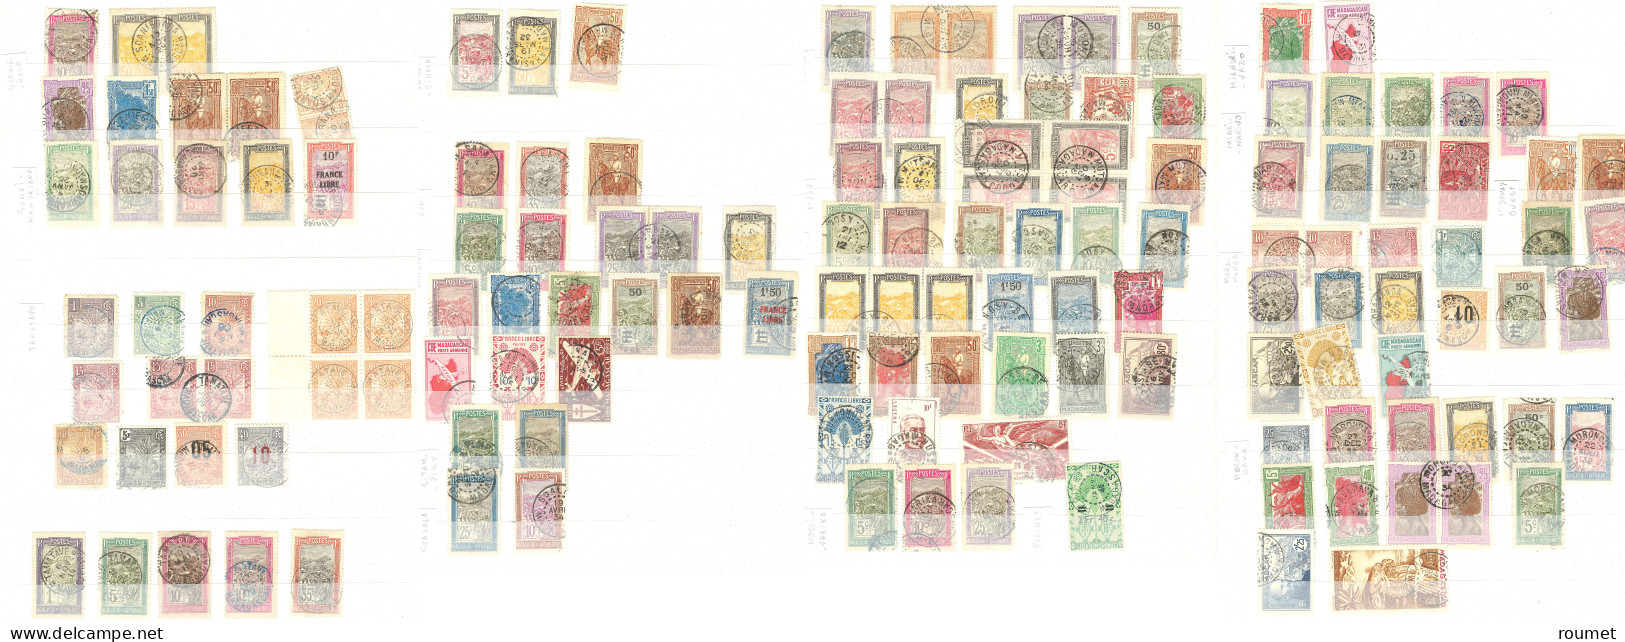 Collection. 1903-1957 (Poste, PA, Taxe), divers dont multiples et séries complètes, obl choisies de petits bureaux dont 